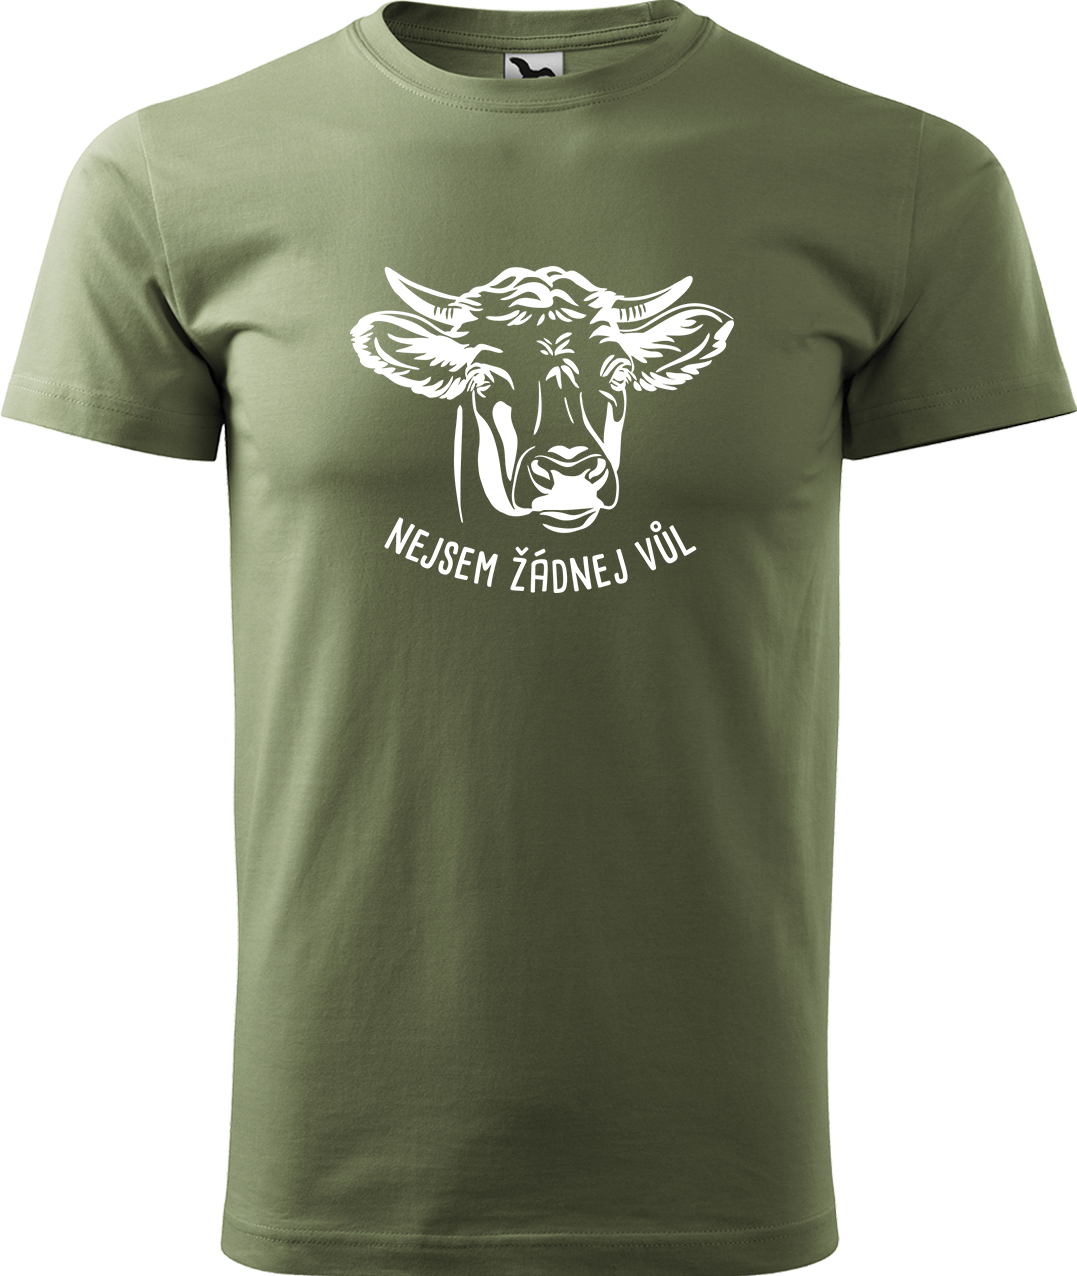 Pánské tričko s krávou - Nejsem žádnej vůl Velikost: M, Barva: Světlá khaki (28), Střih: pánský